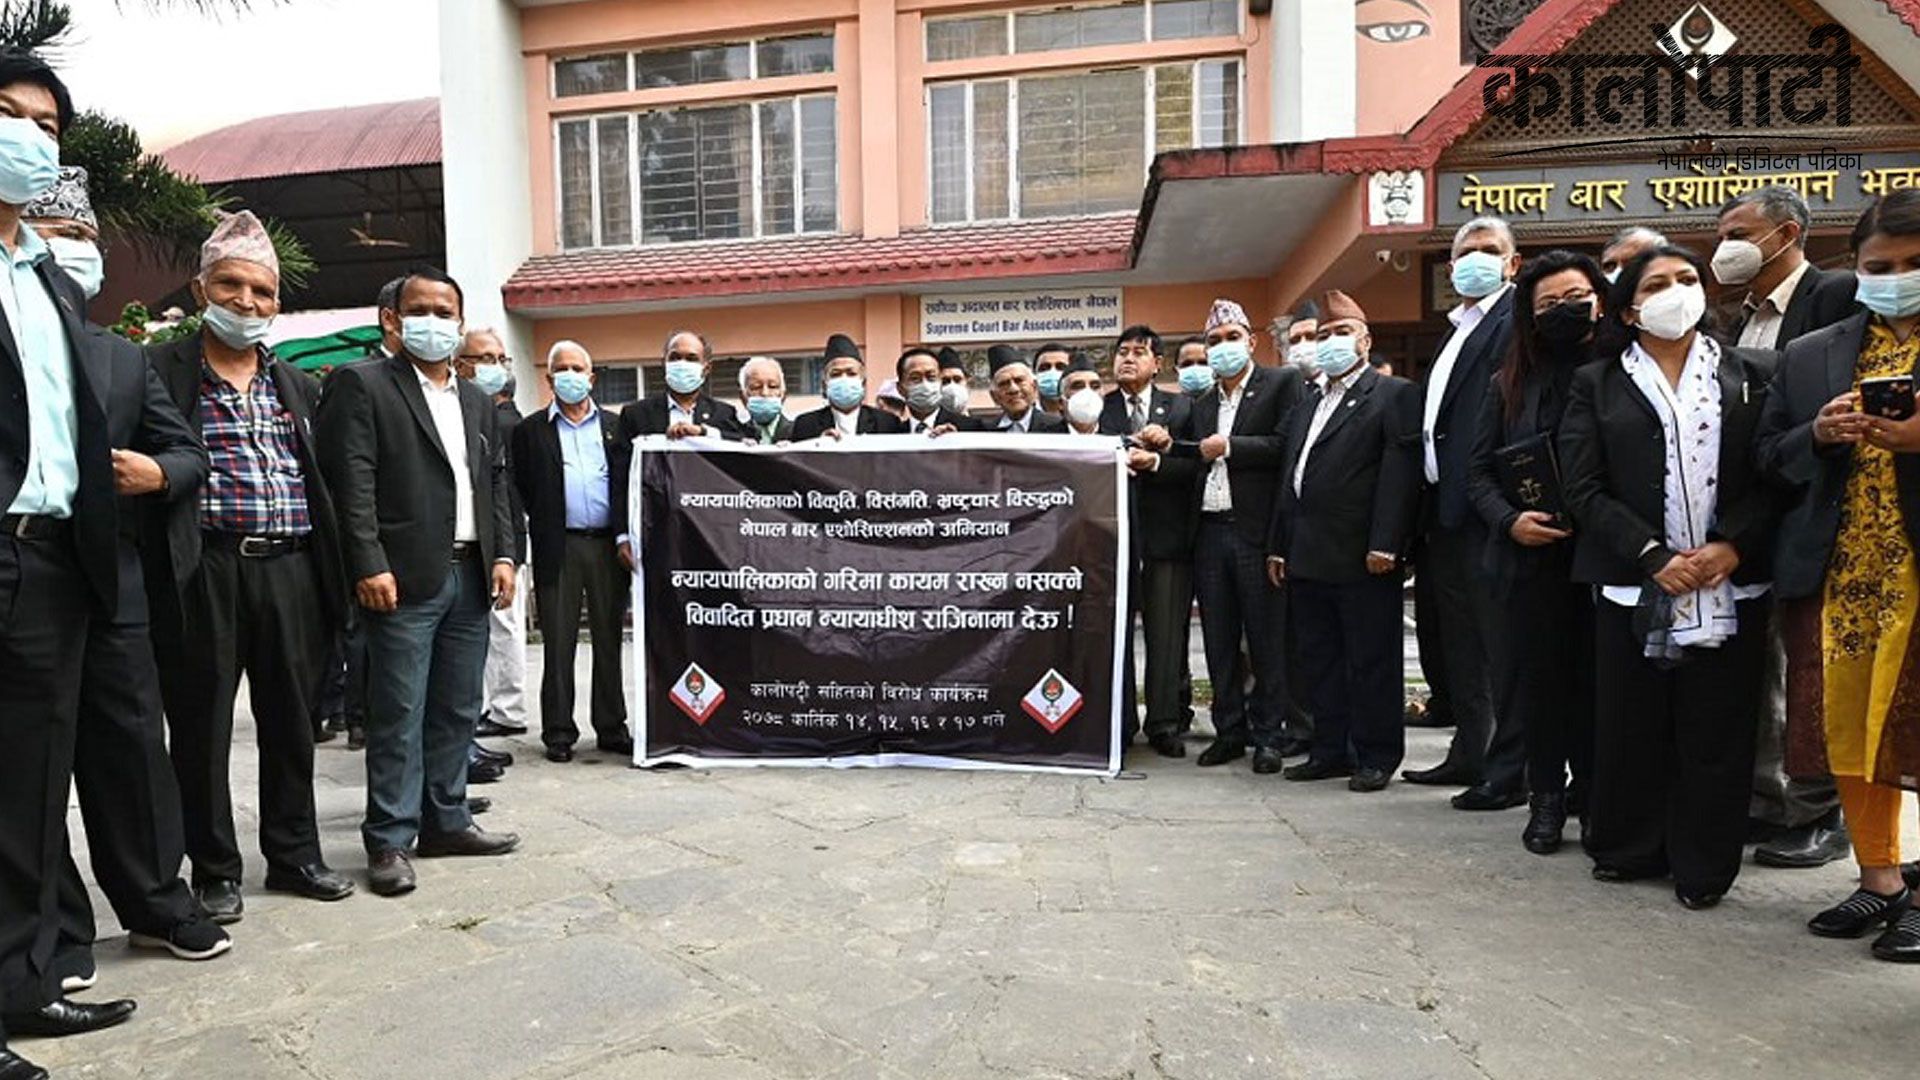 नेपाल बार एसोसिएसनले प्रधानन्यायाधीश जबराको राजिनामा माग गर्दै सोमबार सर्वोच्च अदालत परिसरमा विरोध प्रदर्शन